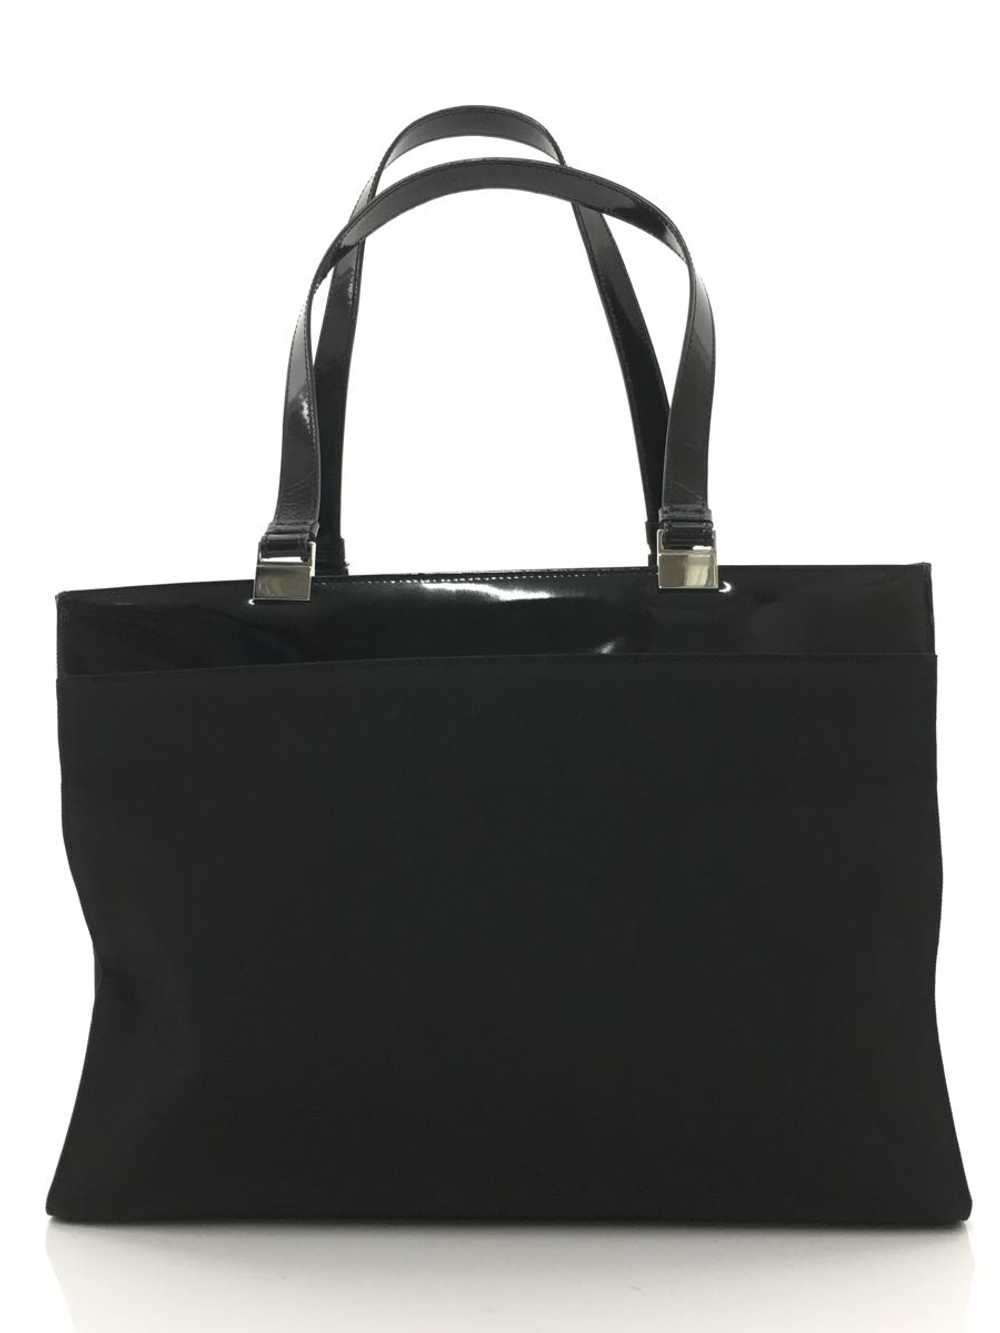 [Japan Used Bag] Used Gucci Tote Bag/Nylon/Blk Bag - image 3